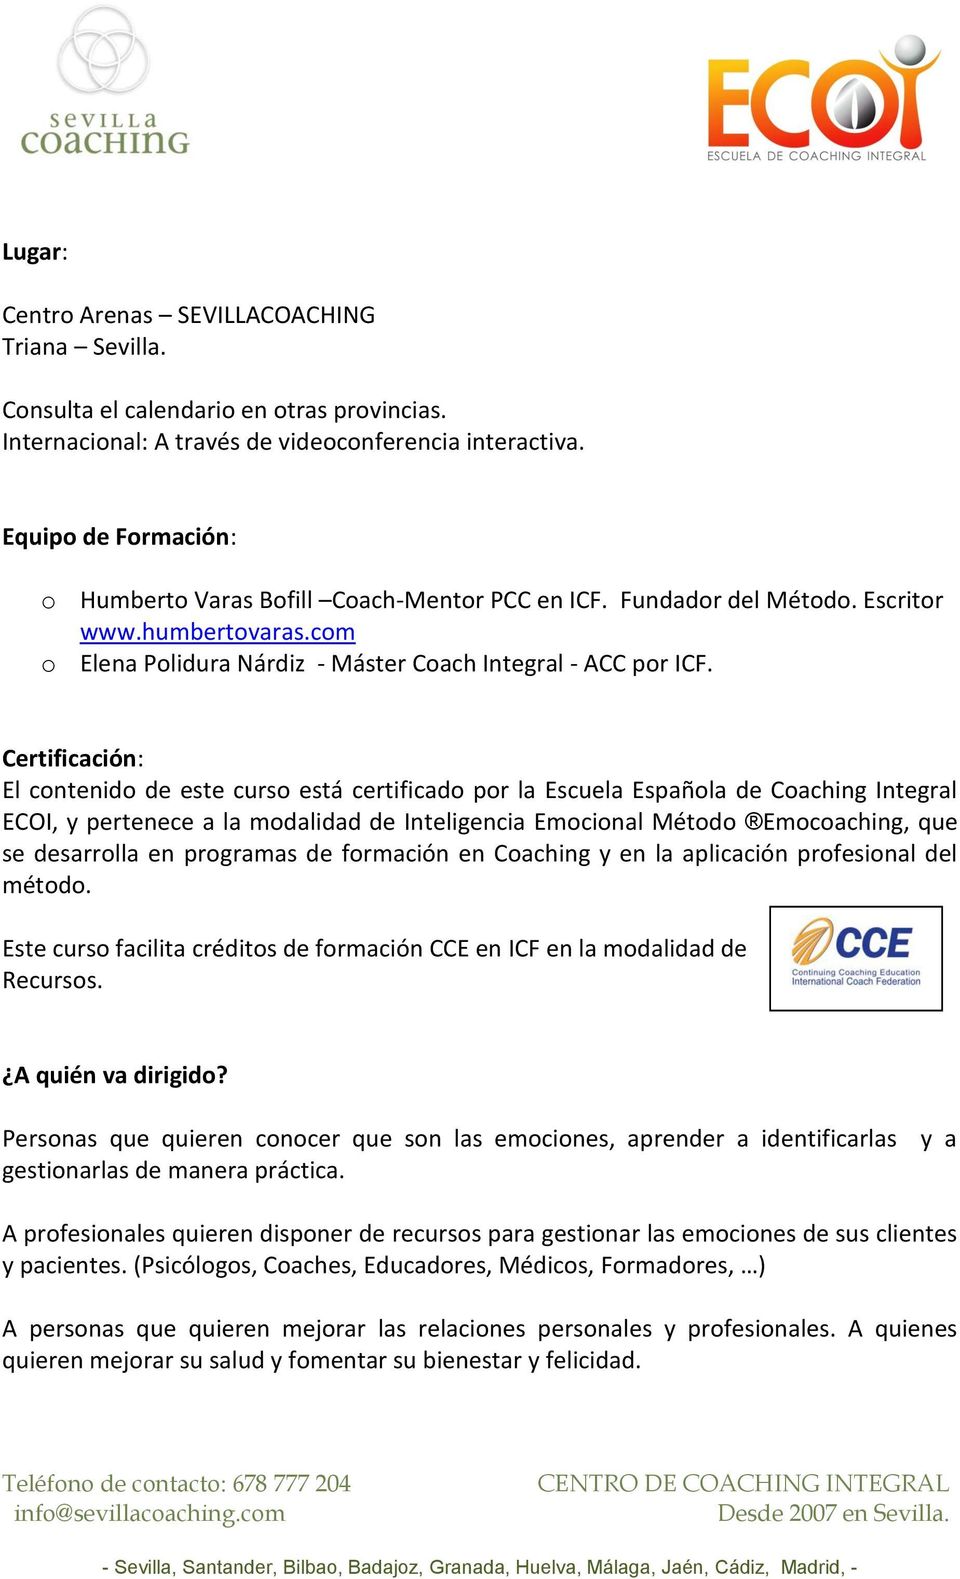 Certificación: El contenido de este curso está certificado por la Escuela Española de Coaching Integral ECOI, y pertenece a la modalidad de Inteligencia Emocional Método Emocoaching, que se